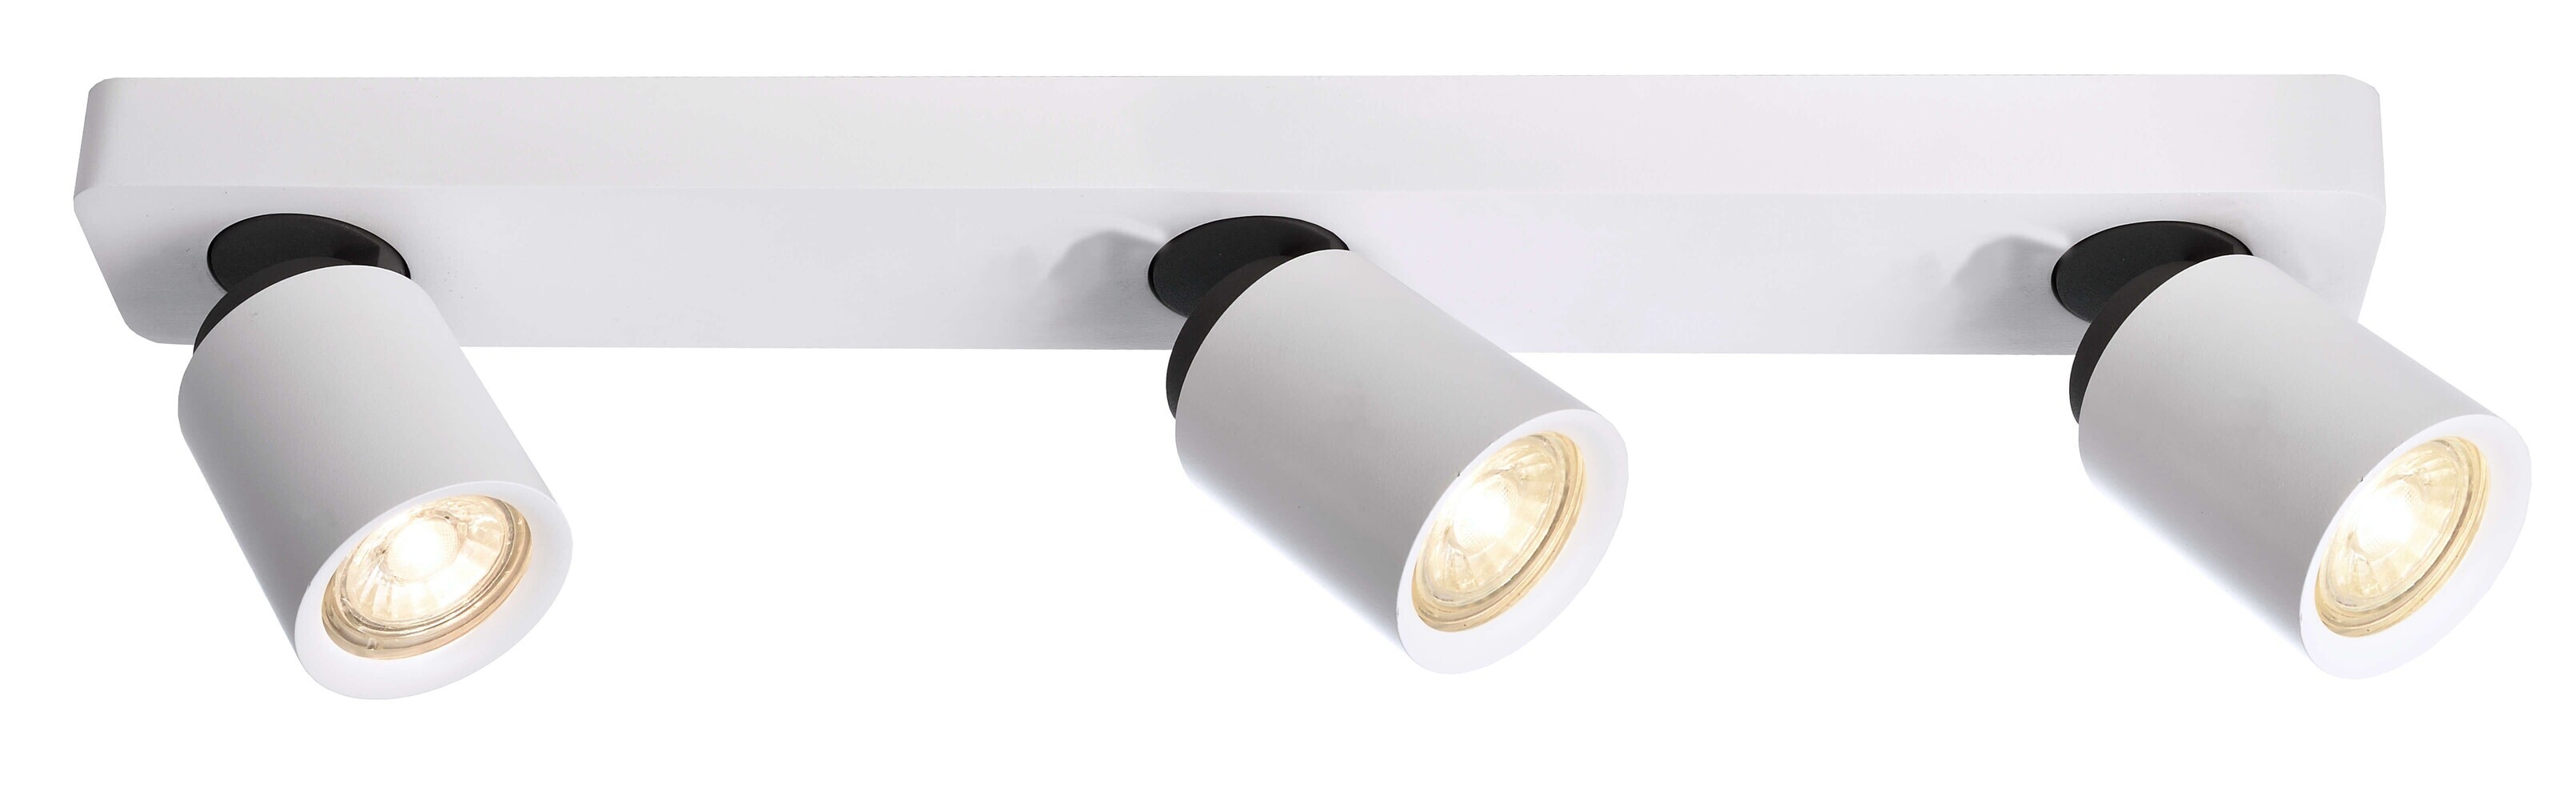 Deckenstrahler & Spots von LED Universum, hochwertiges Design und helle Beleuchtung